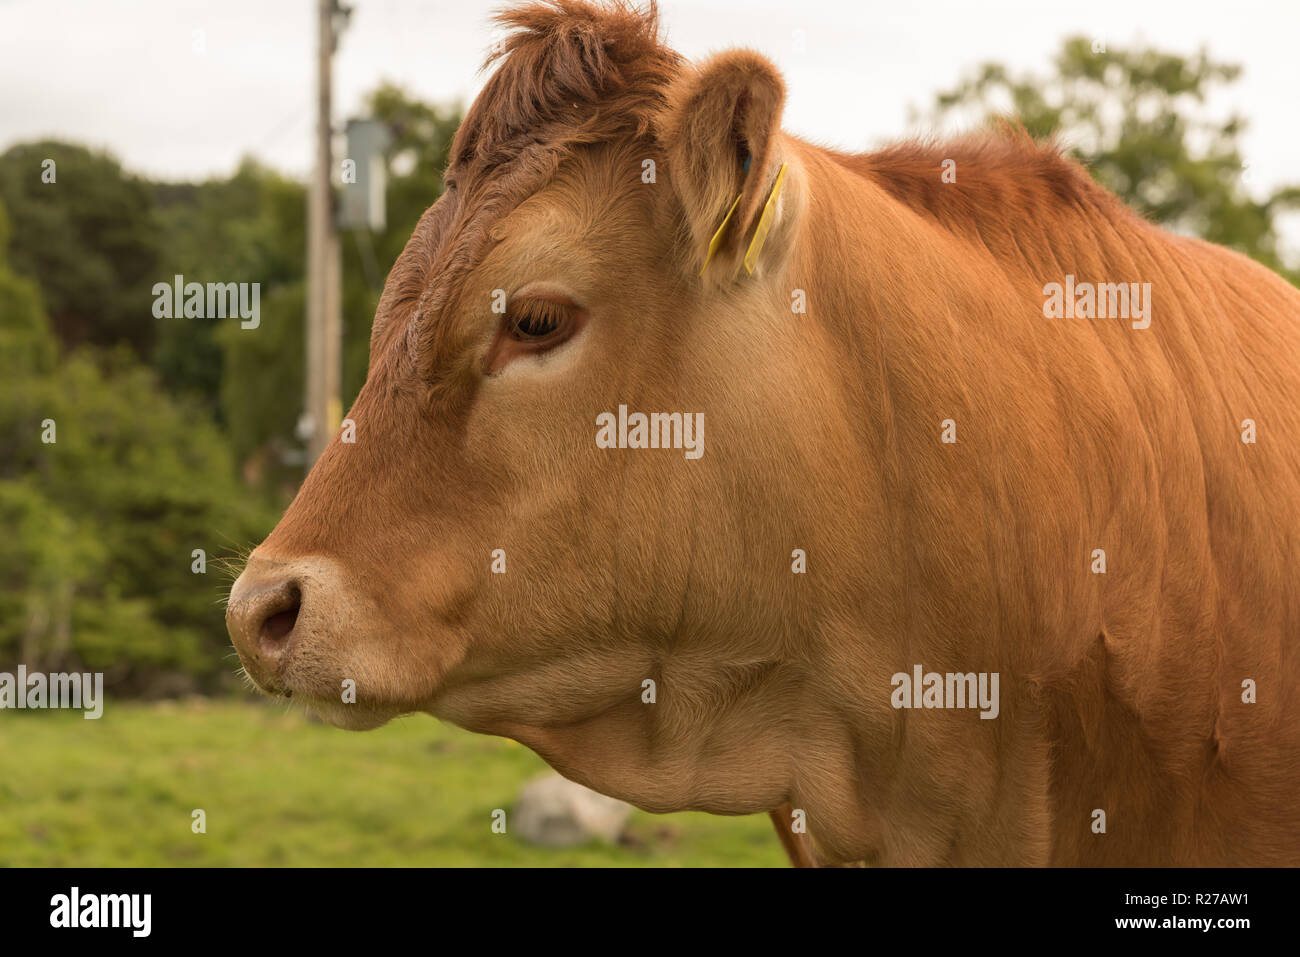 Profil d'une vache Guernsey debout sur une journée d'été dans un pâturage boisé en Ecosse Banque D'Images